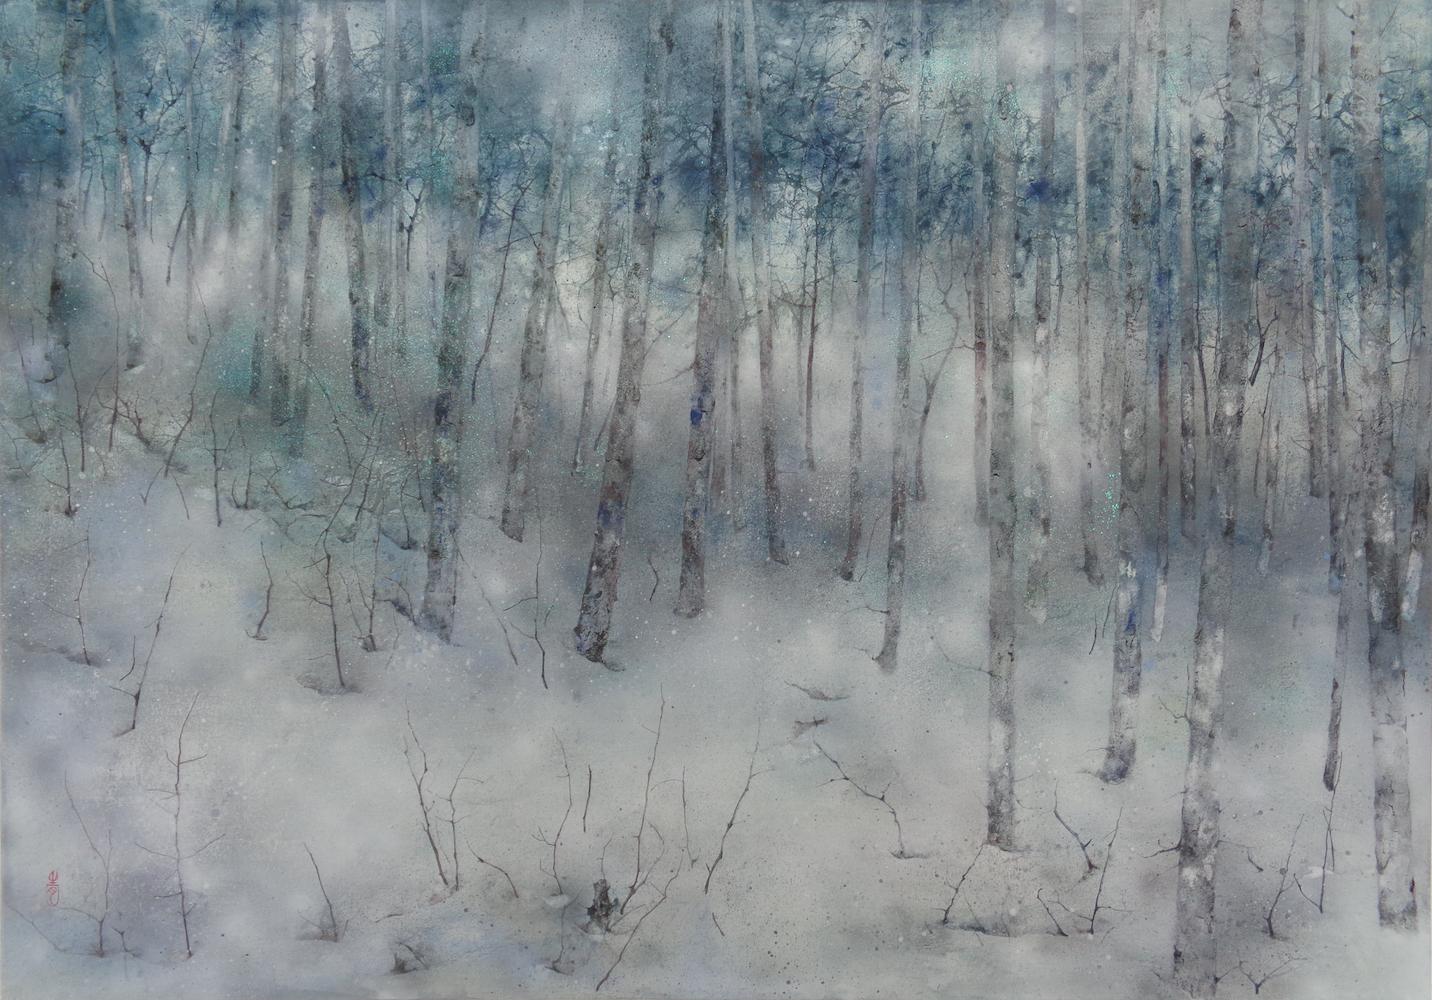 Solitude par Chen Yiching - Peinture nihonga contemporaine, forêt, arbres verts